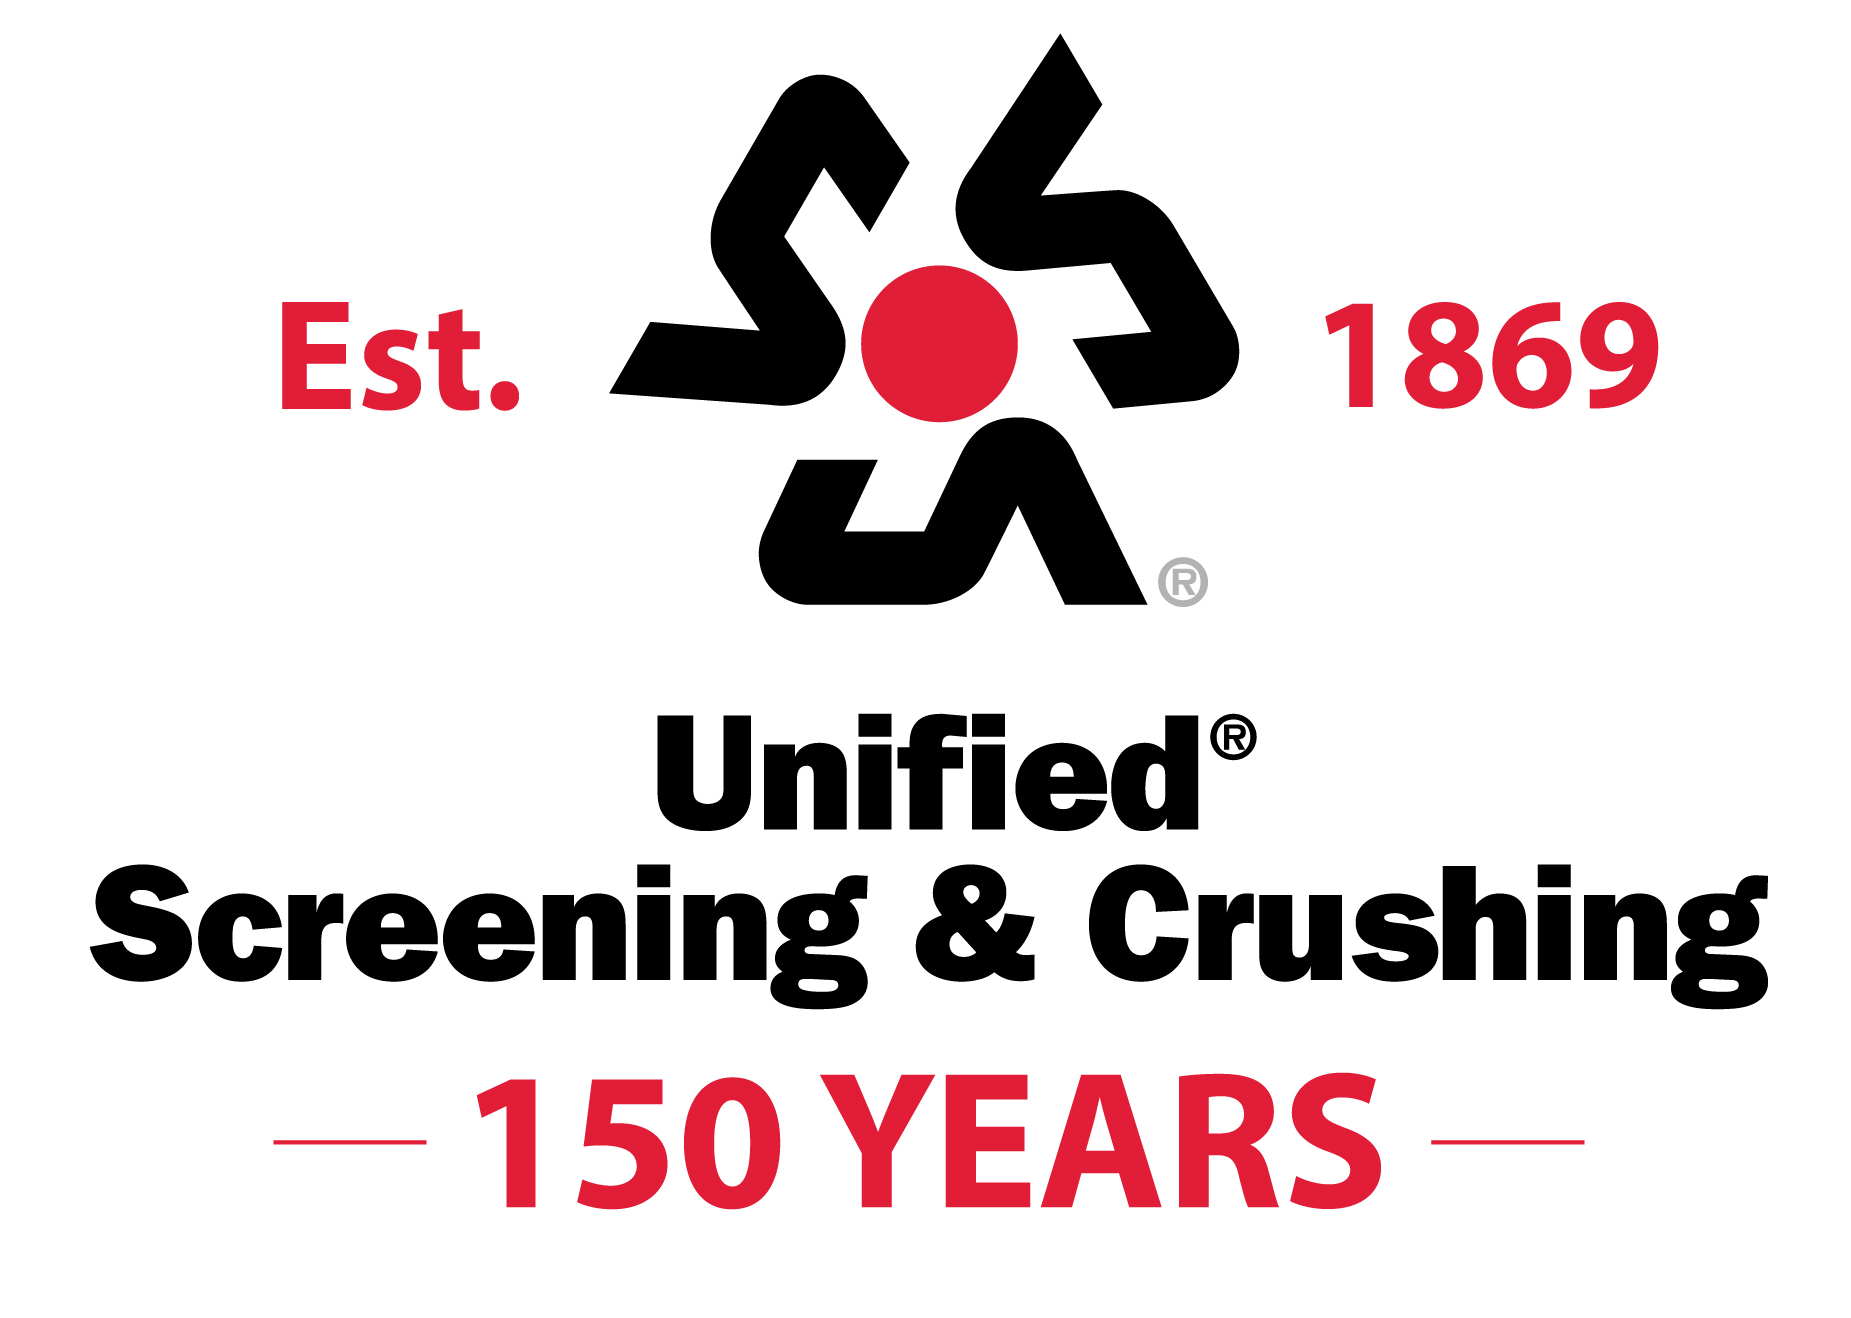 Unified Screening & Crushing - Ohio